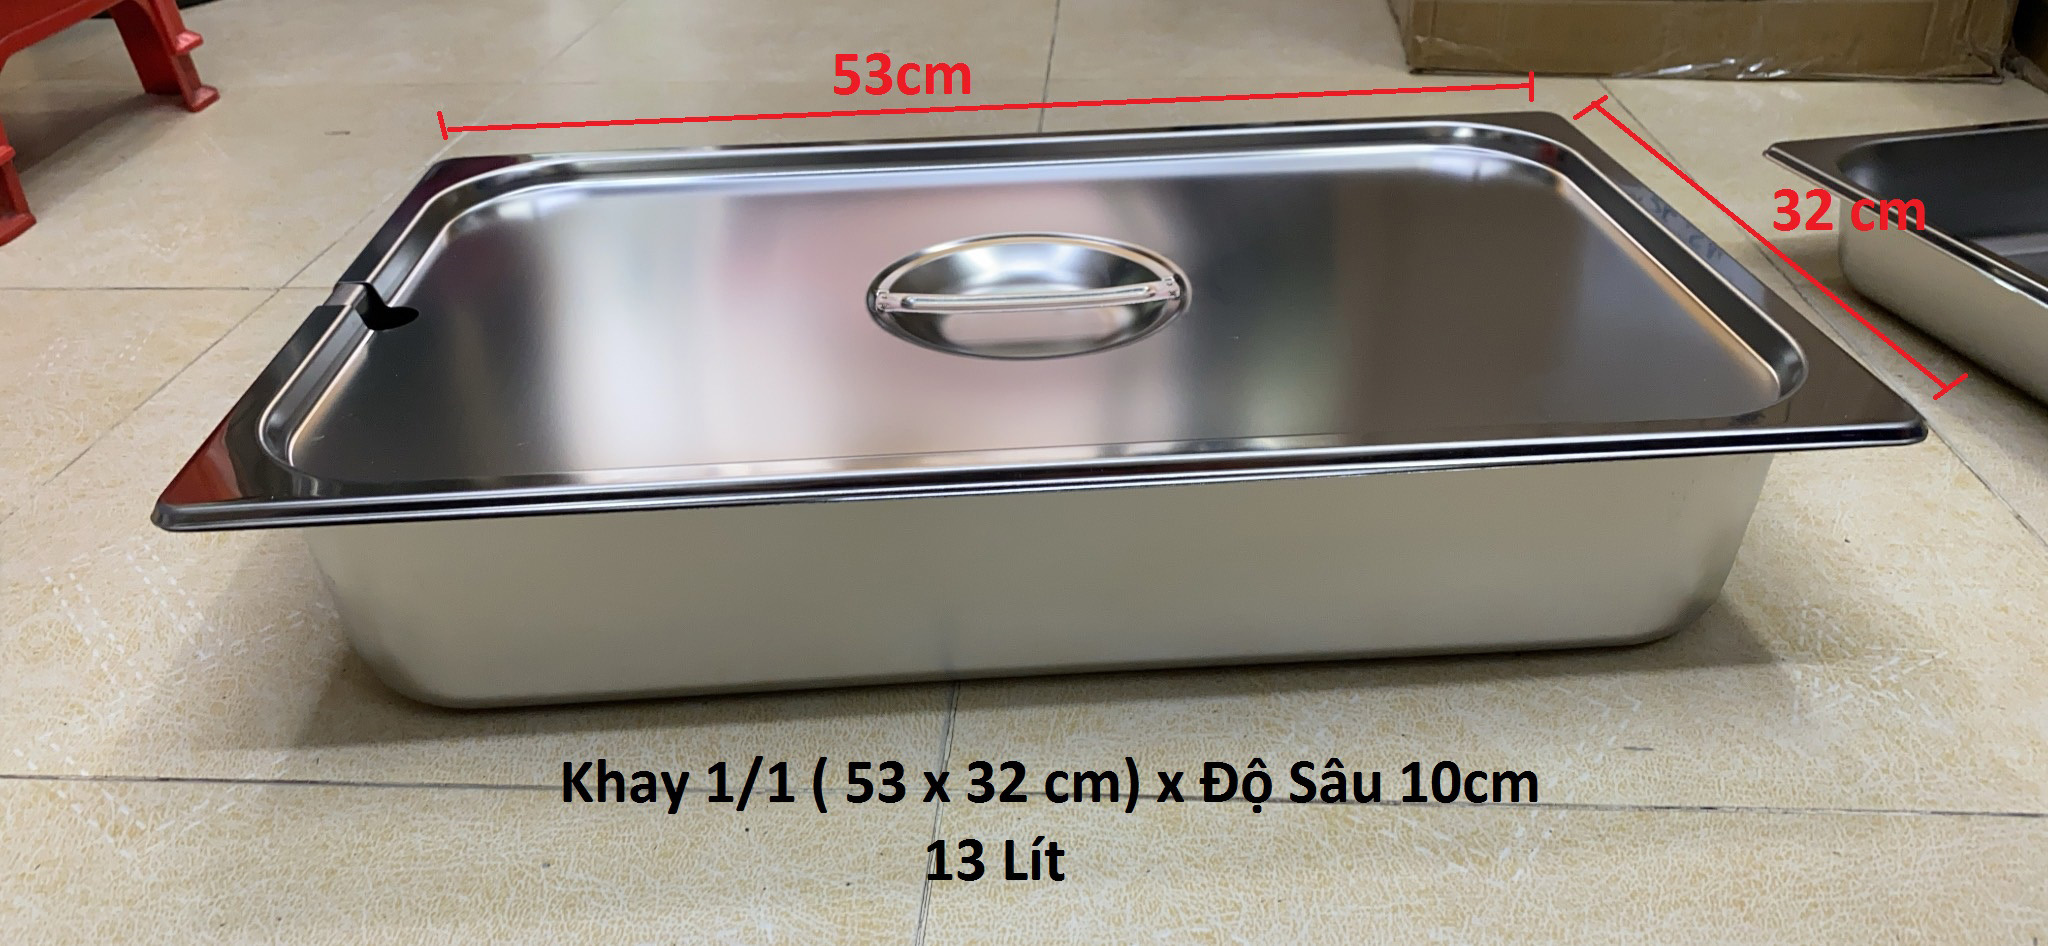 Khay Inox 1/1 Cao 10cm Nắp Khuyết